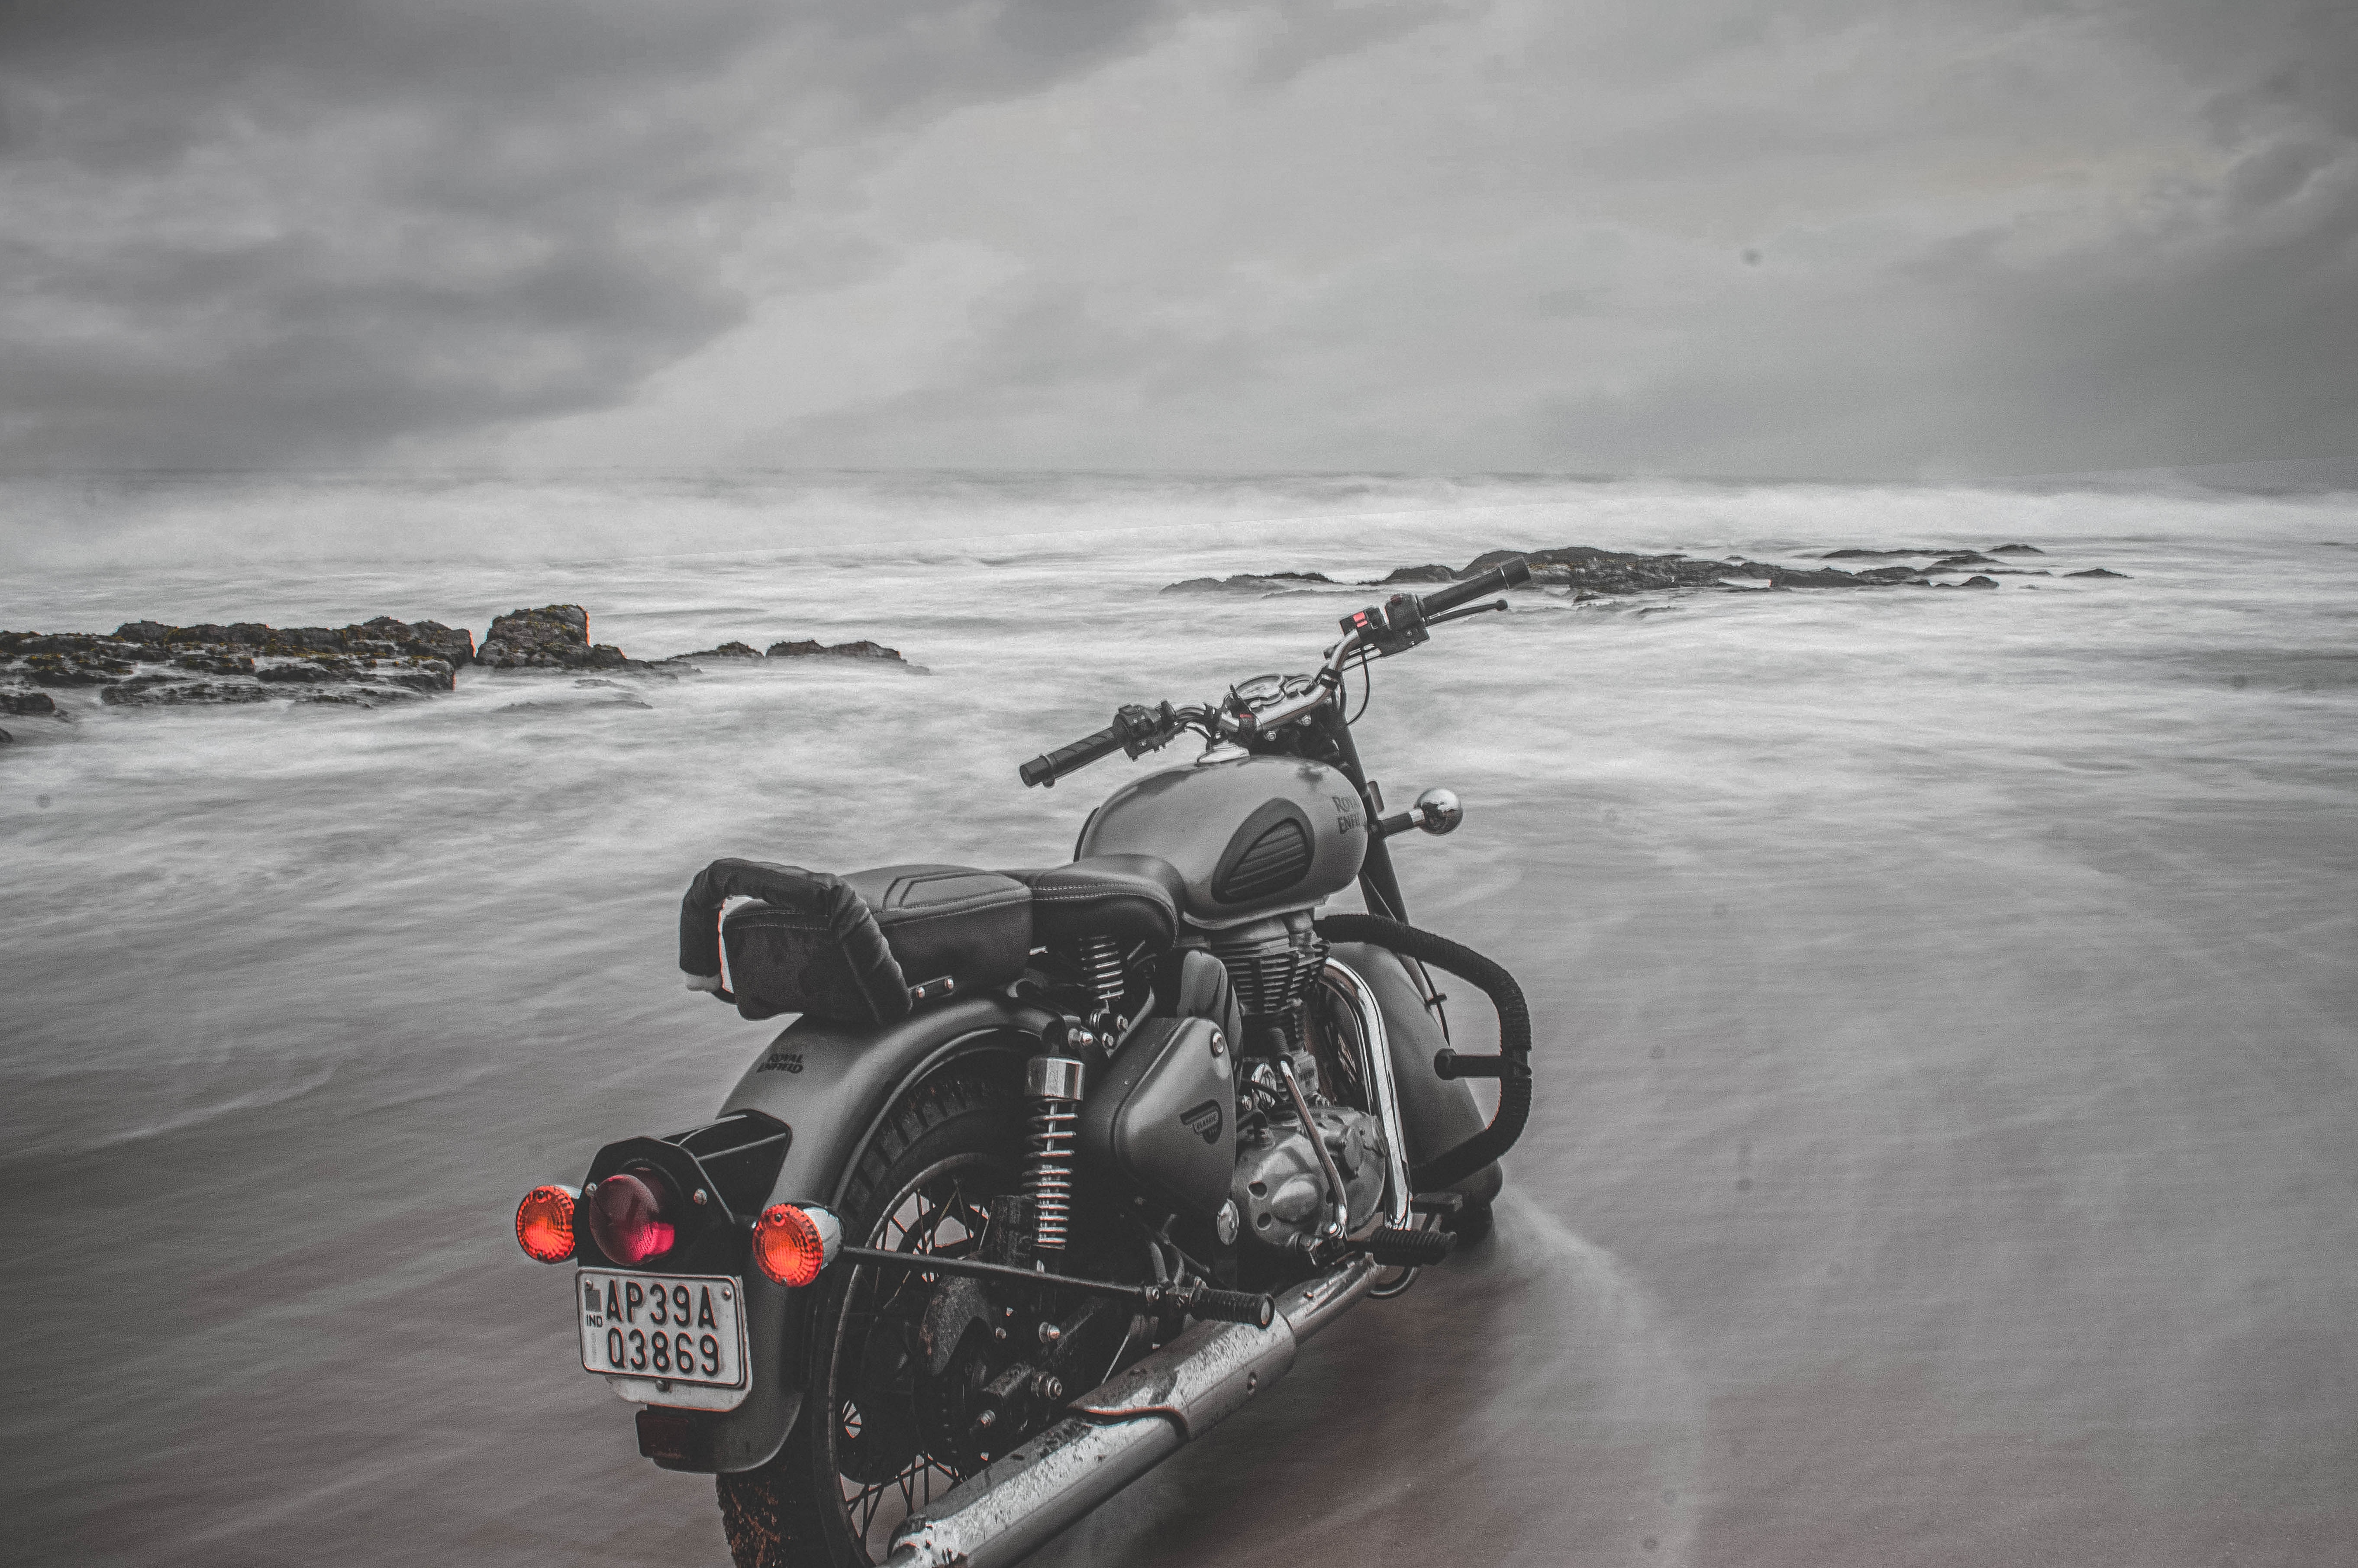 Descarga gratuita de fondo de pantalla para móvil de Mar, Motocicleta, Bicicleta, Motocicletas, Playa.